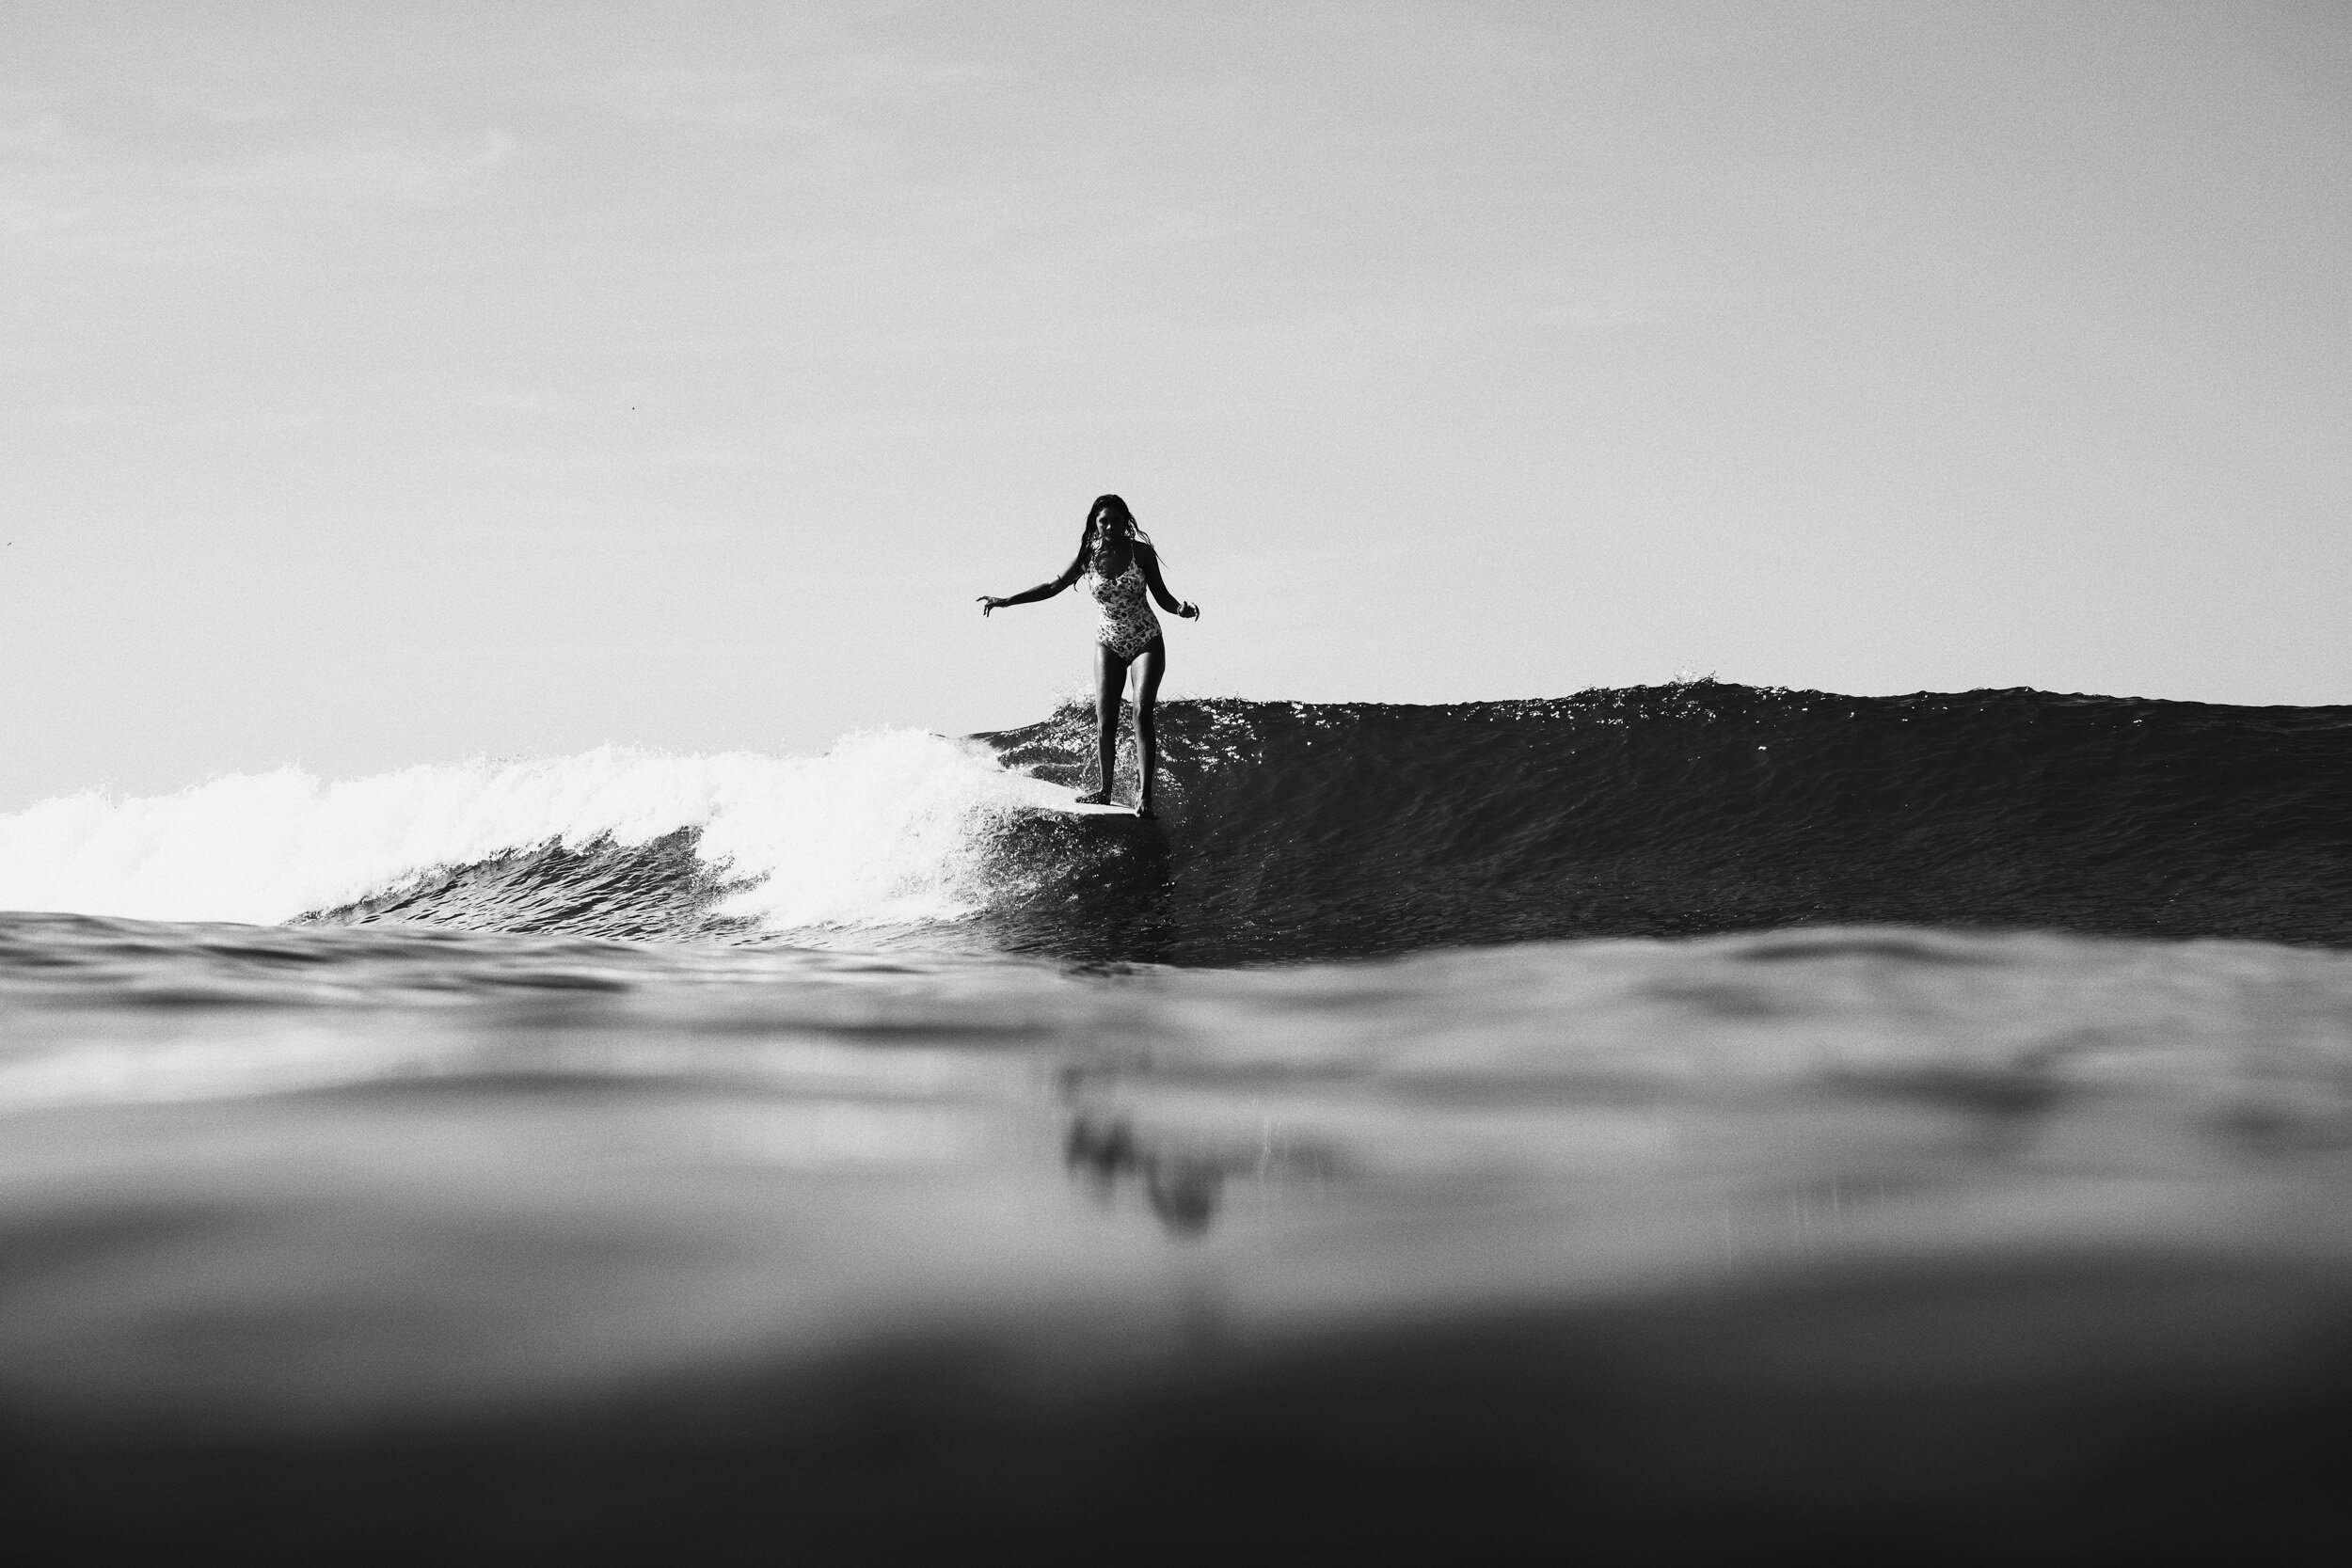 la-saladita-mexico-surf-longboard-fotografia-heiko-bothe-2311.jpg